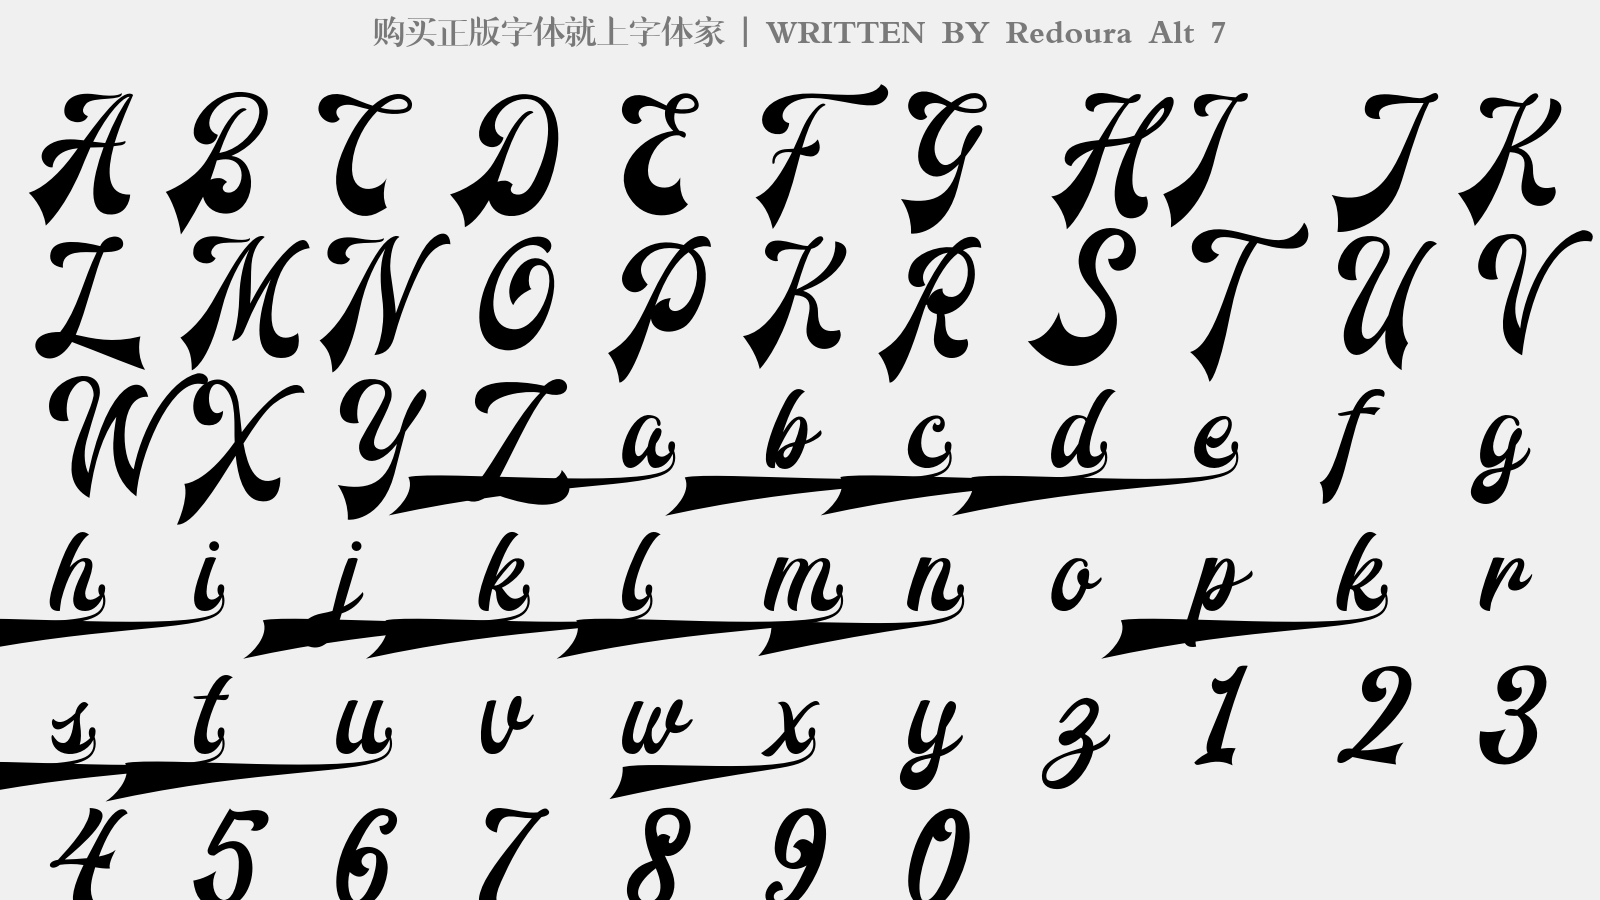 redoura alt 7 - 大写字母/小写字母/数字